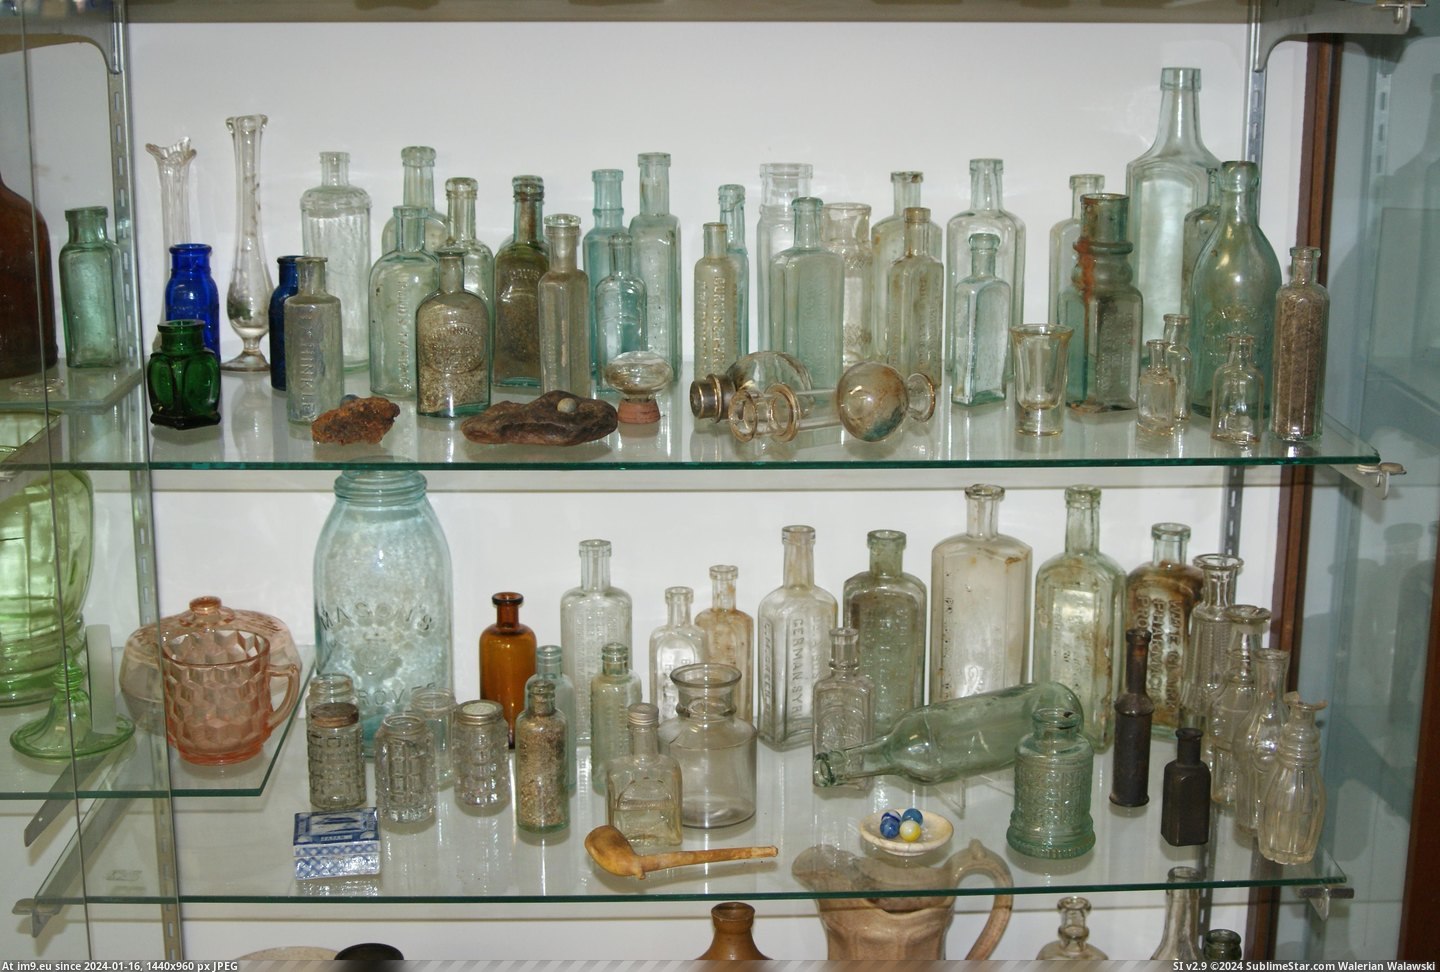 #Museum #Maine #Naples #Bottle MAINE BOTTLE MUSEUM NAPLES (23) Pic. (Bild von album MAINE BOTTLE MUSEUM))